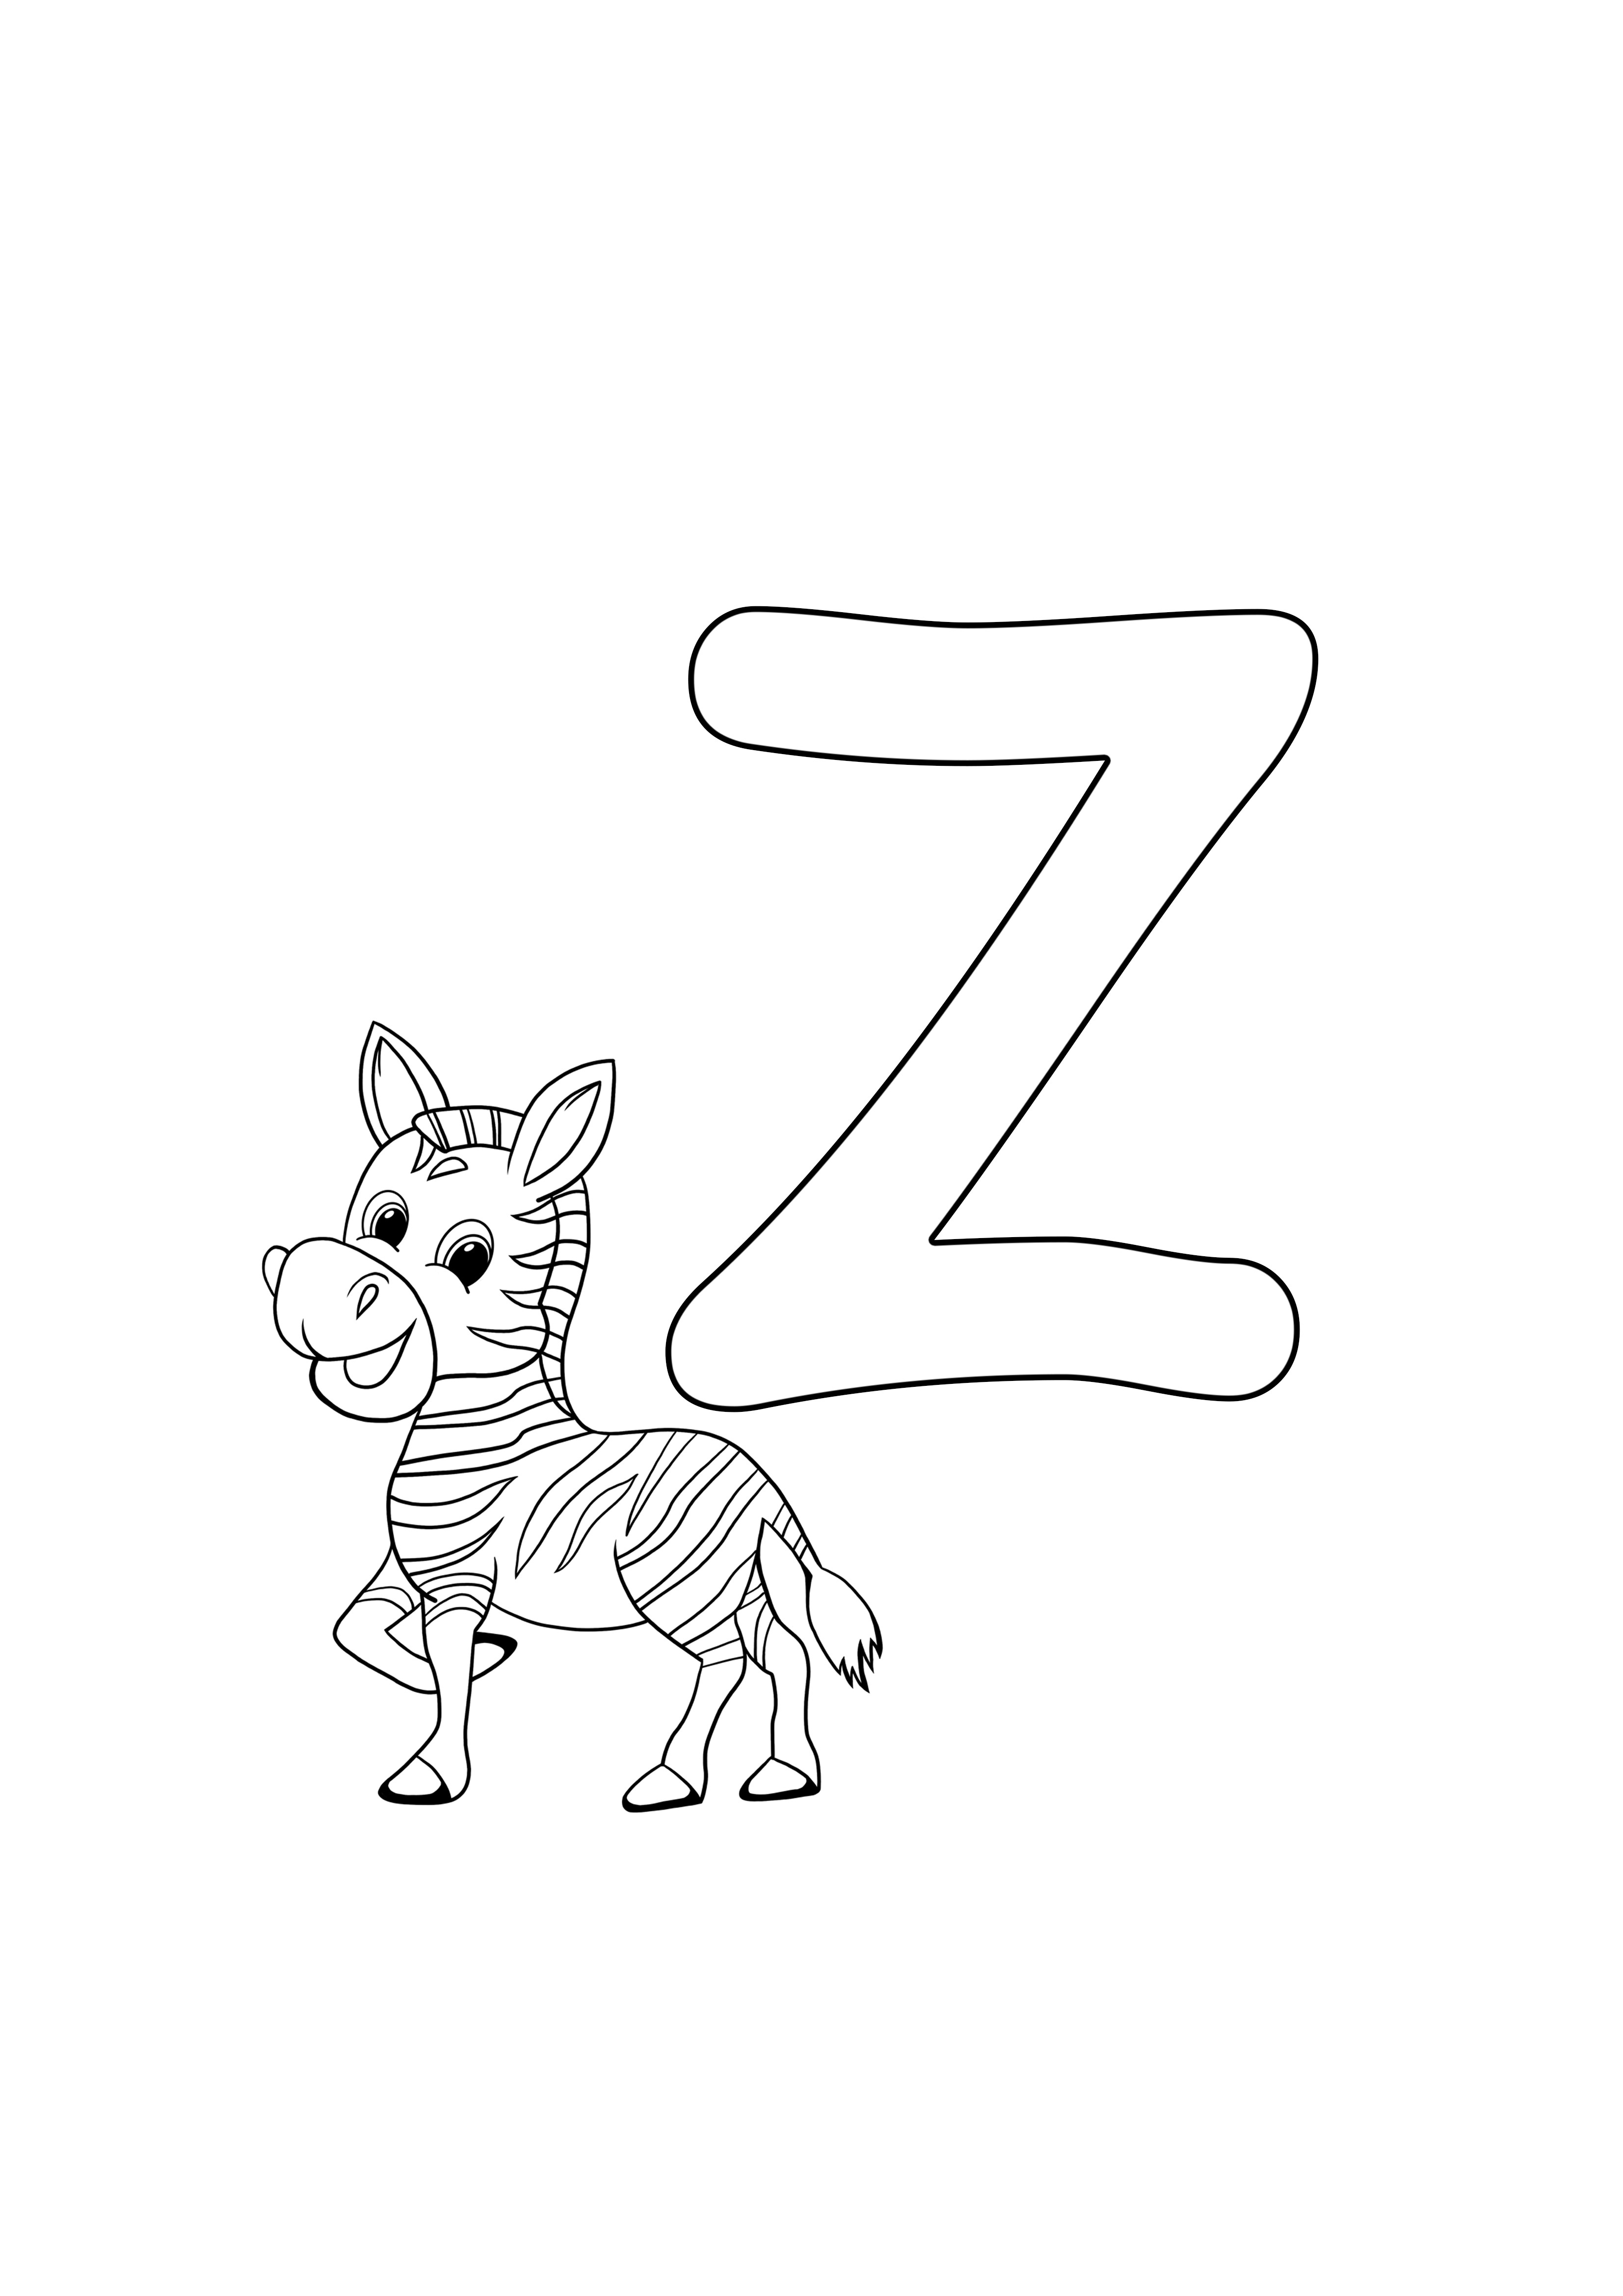 z es para zebra gratis para imprimir, gratis para colorear la página